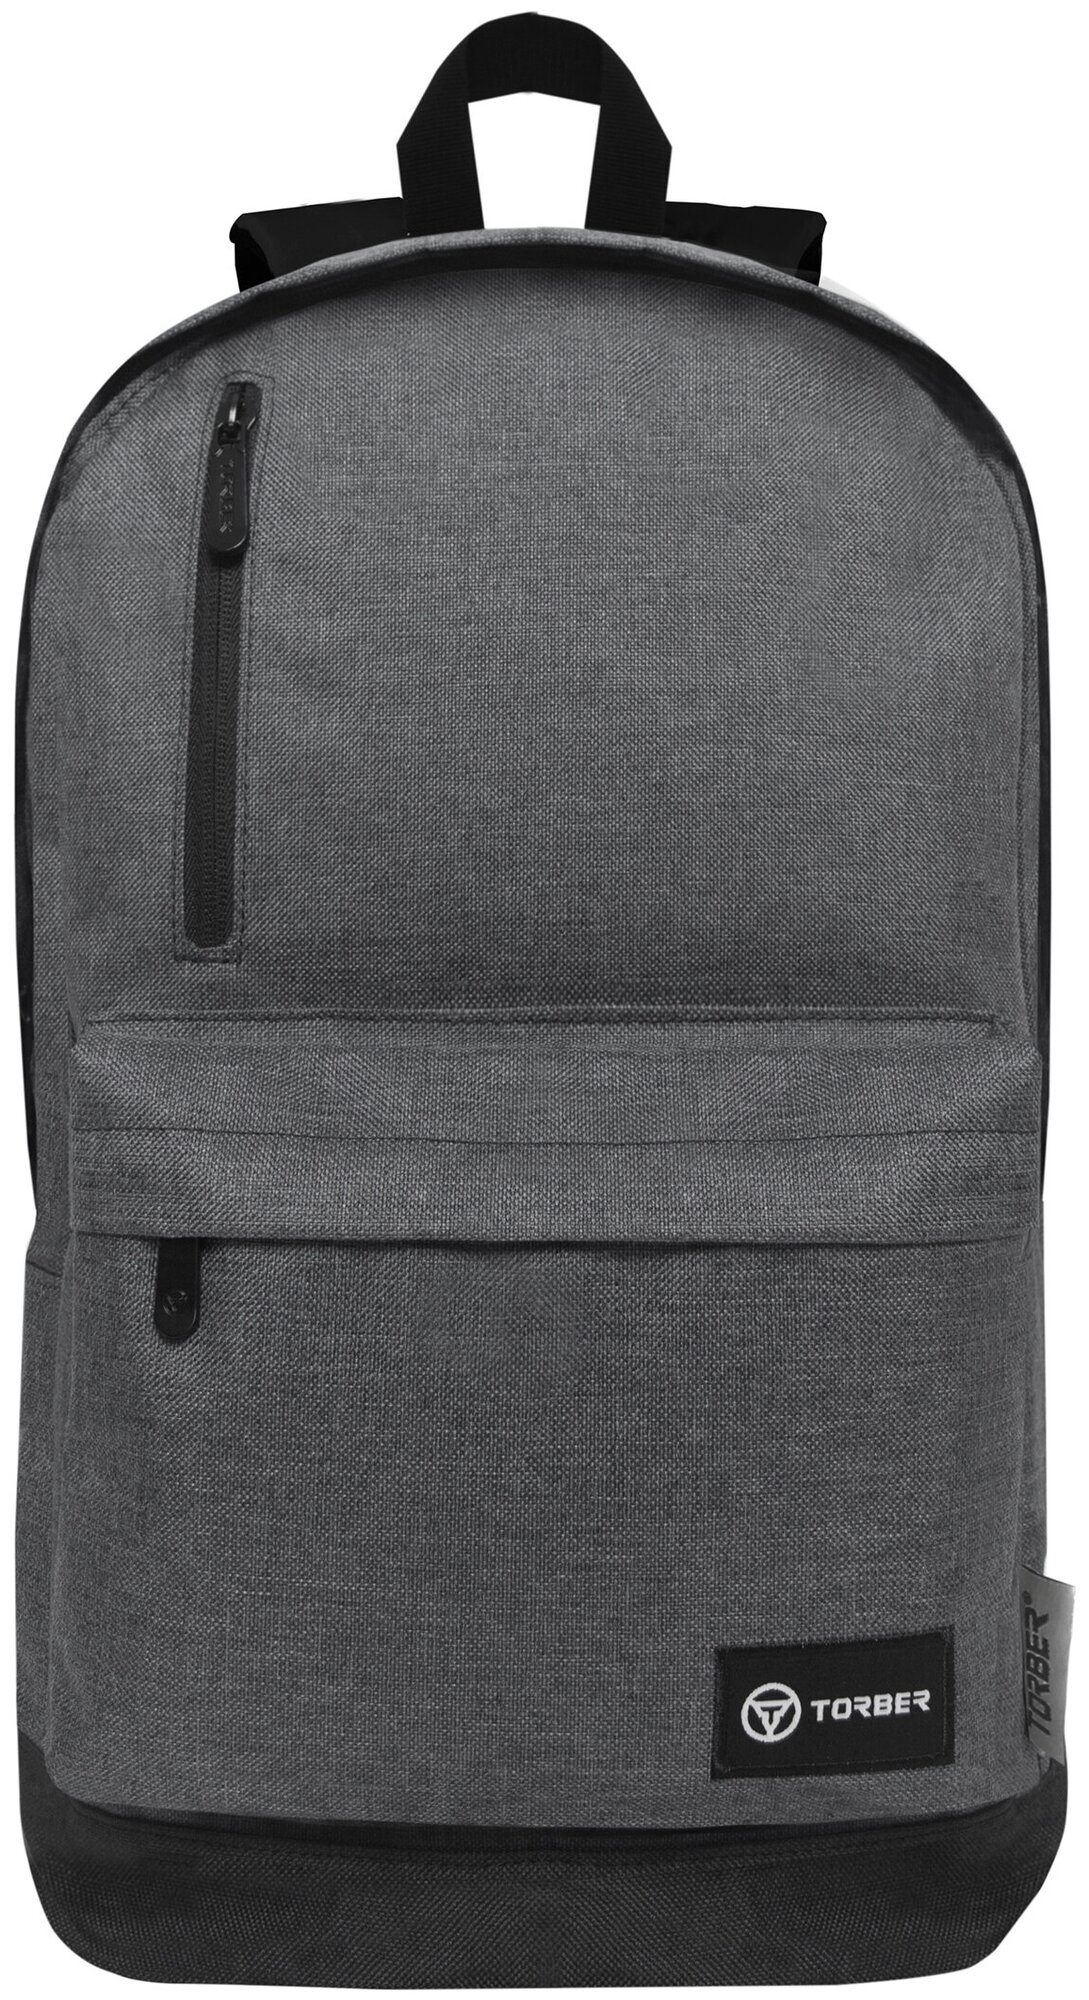 Городской рюкзак TORBER GRAFFI, мужской, женский, серый, полиэстер меланж, 46 х 29 x 18 см, 24,5 л (T8083-GRE)